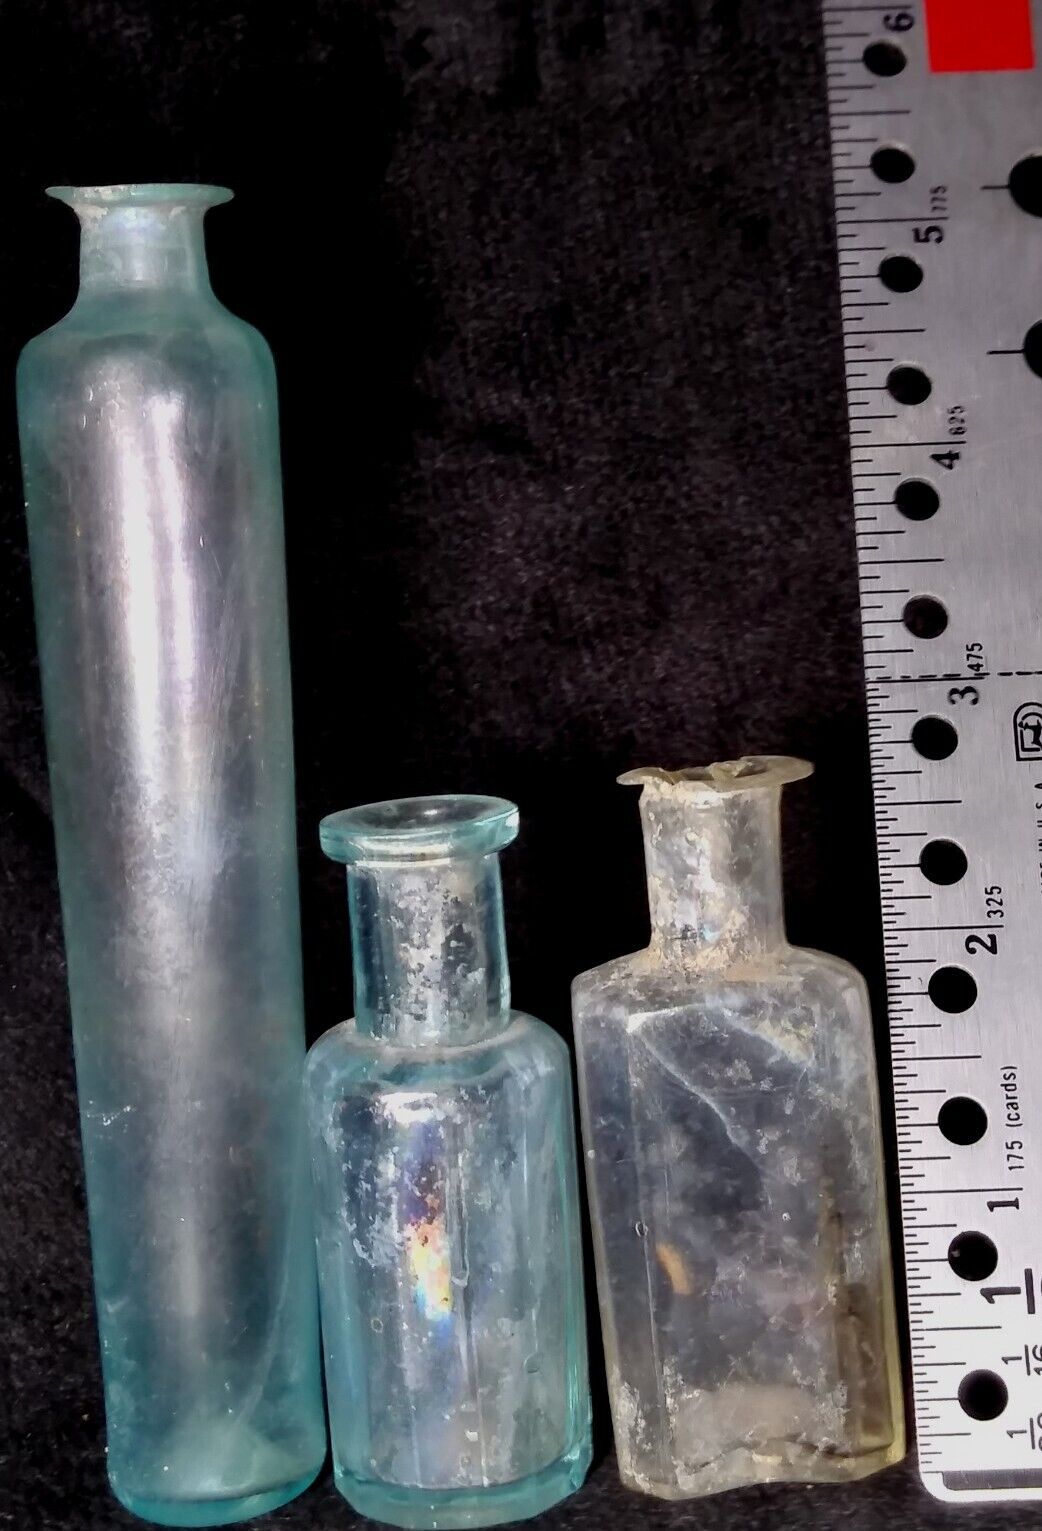 American Historical 2 Pontil Medicine Bottles Both 1830s Era One 12 Sided Bottle